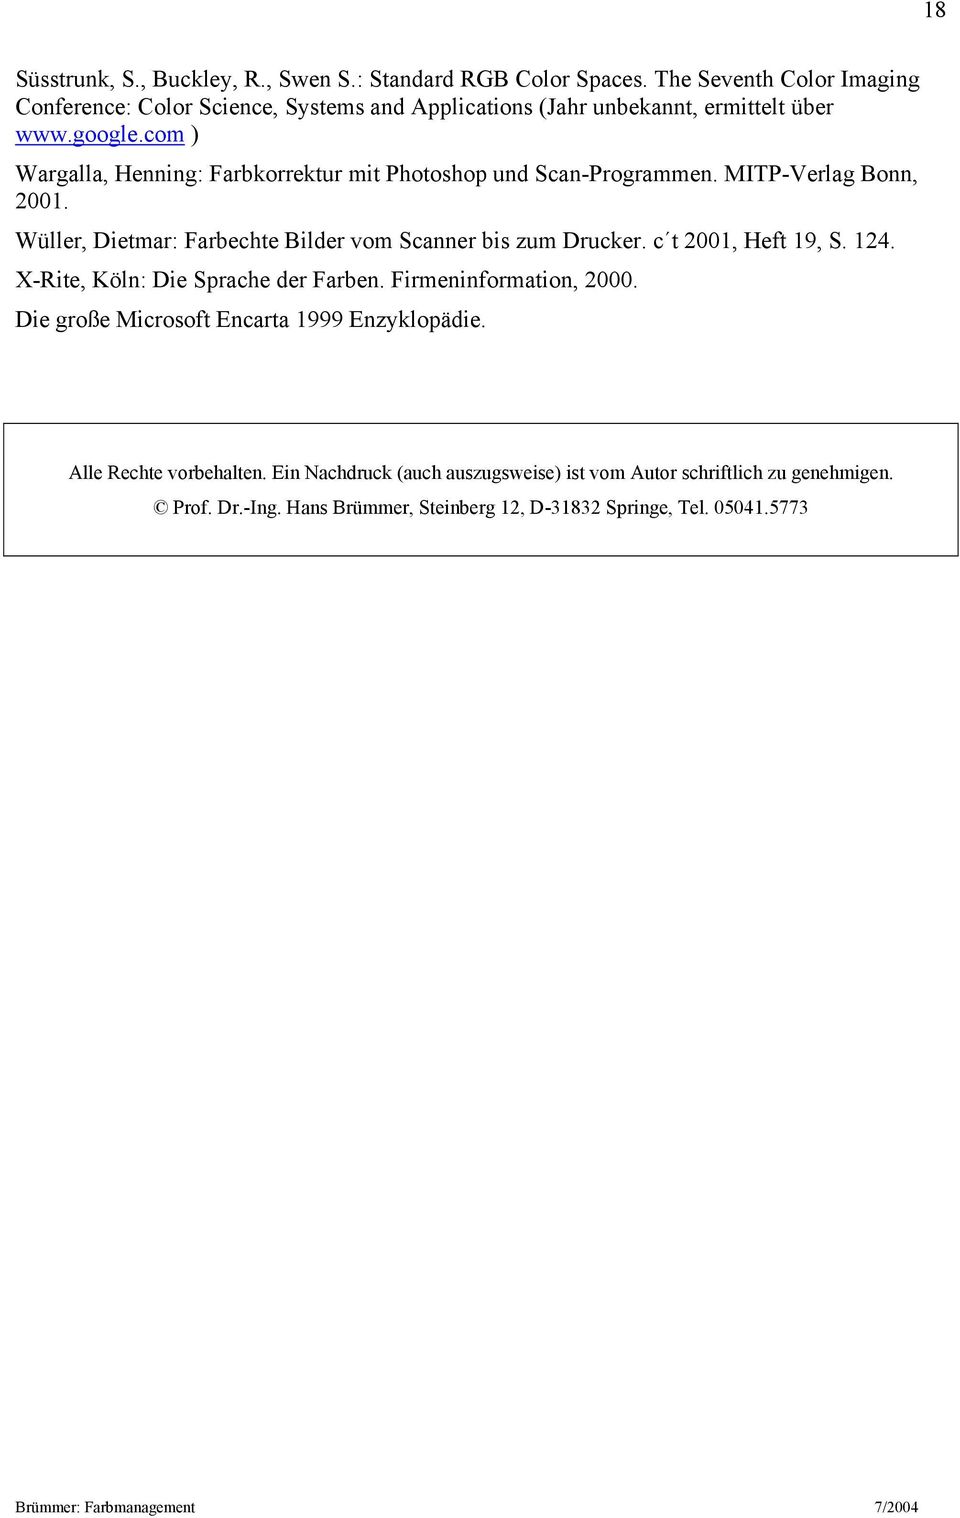 com ) Wargalla, Henning: Farbkorrektur mit Photoshop und Scan-Programmen. MITP-Verlag Bonn, 2001. Wüller, Dietmar: Farbechte Bilder vom Scanner bis zum Drucker.